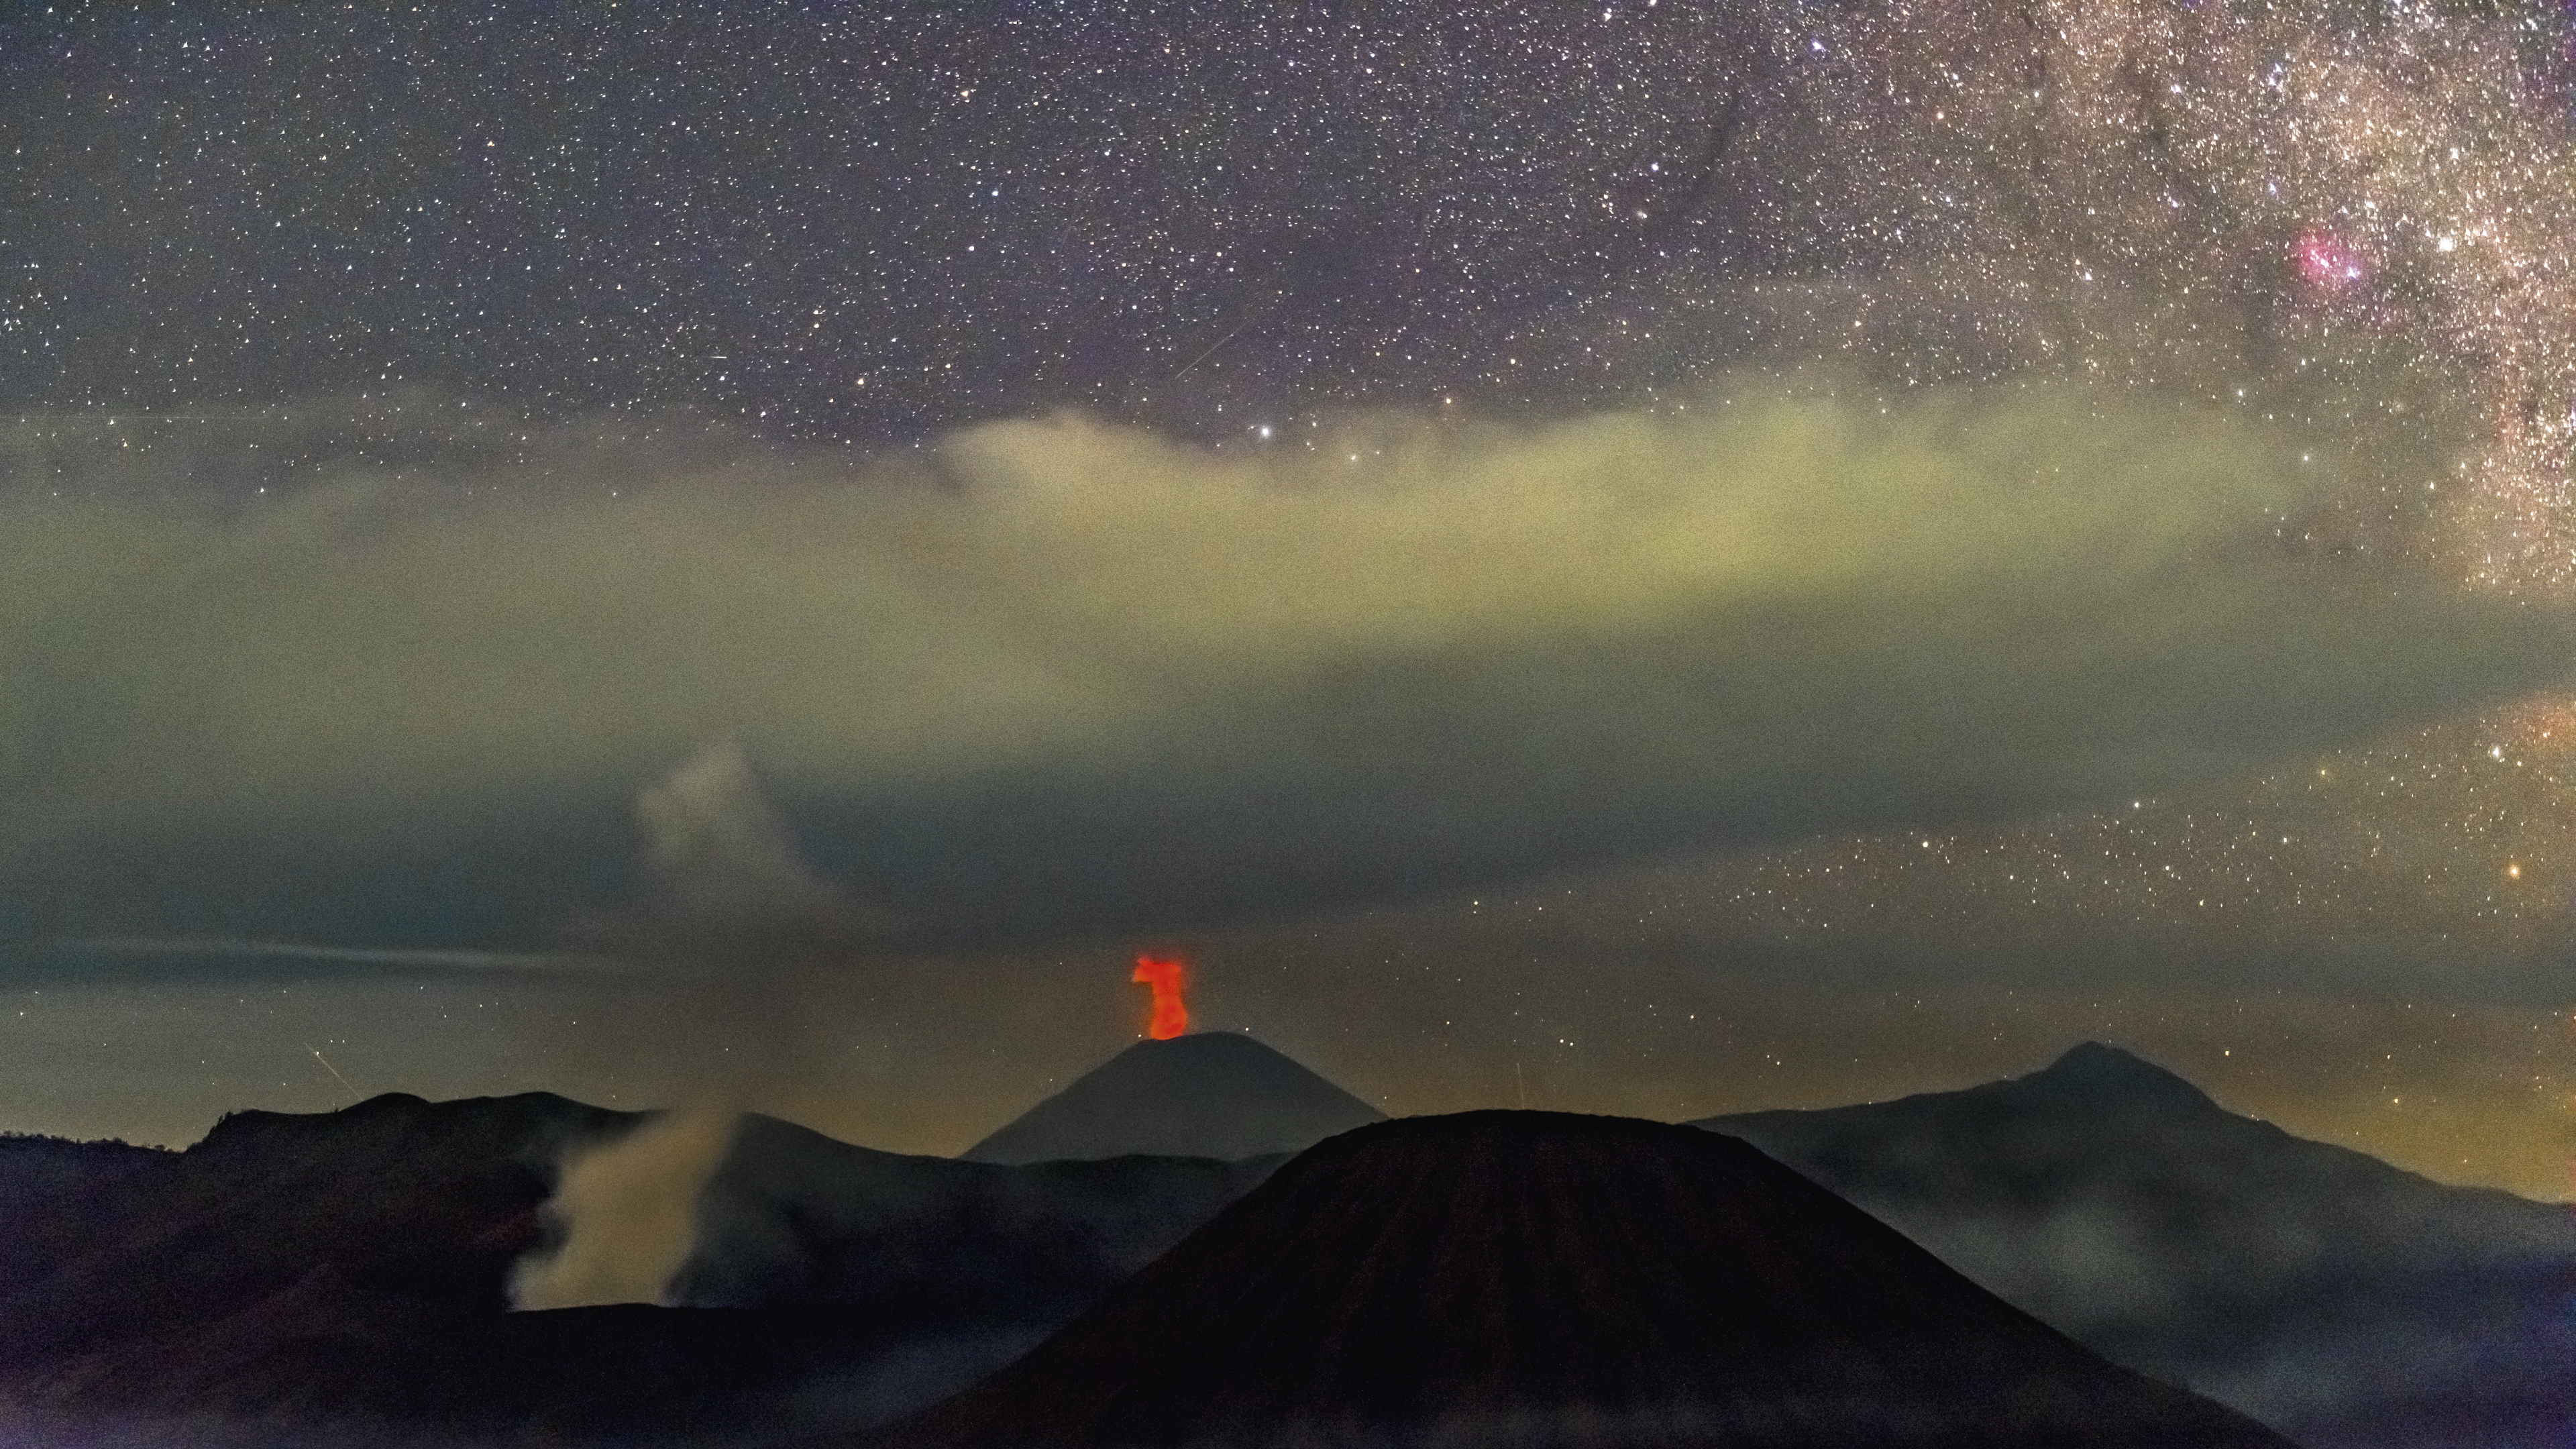 Der rauchende Krater des Vulkans Bromo und der Feuer speiende Semeru, der höchste Berg auf der Insel Java, bilden eine exotische Kulisse vor den Wolkenfronten der irdischen Atmosphäre und den interstellaren Wolken in der Milchstraße.